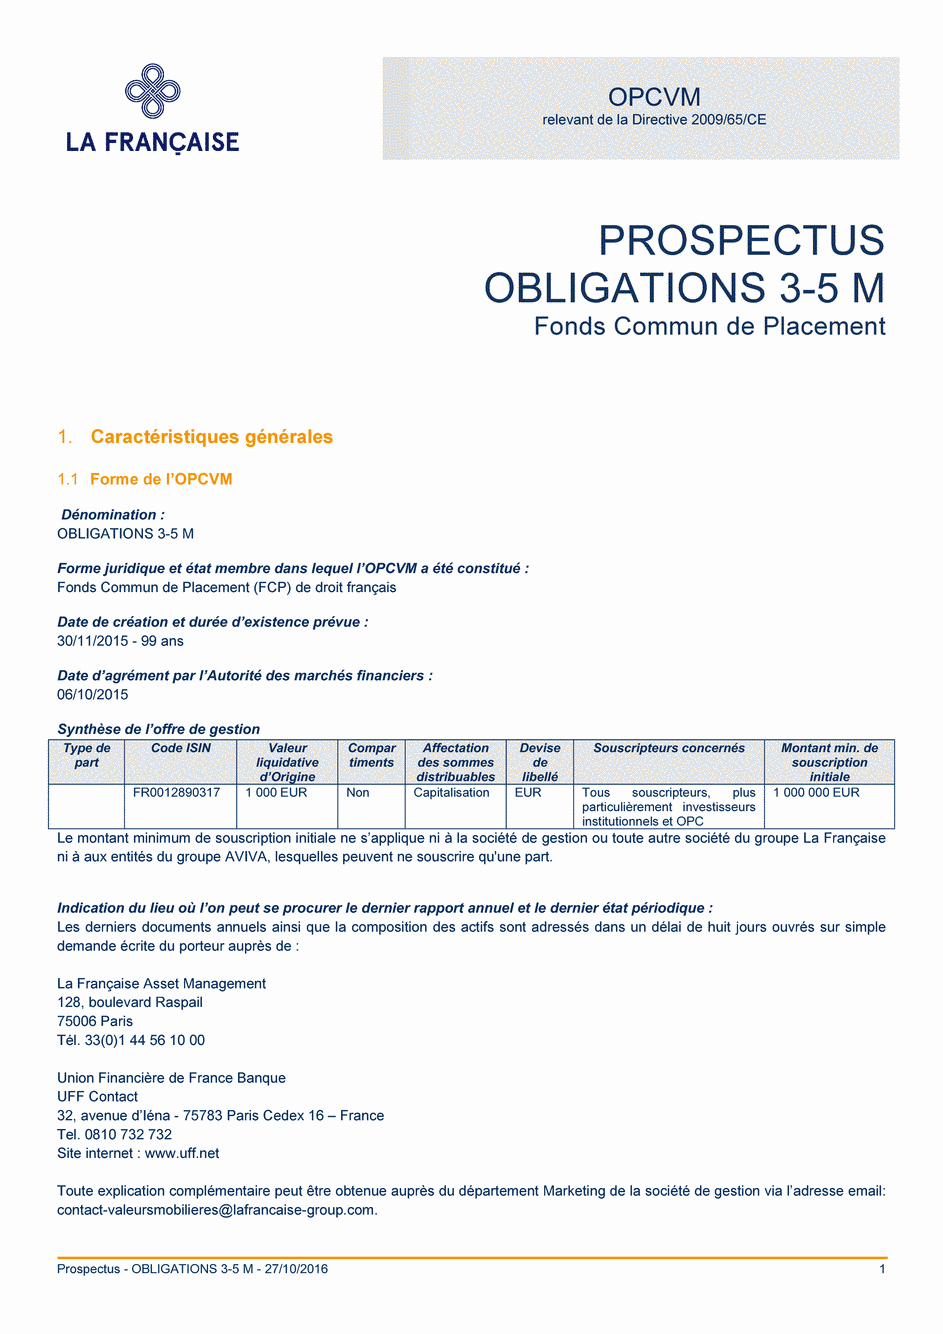 Prospectus OBLIGATIONS 3-5 M - 27/10/2016 - Français